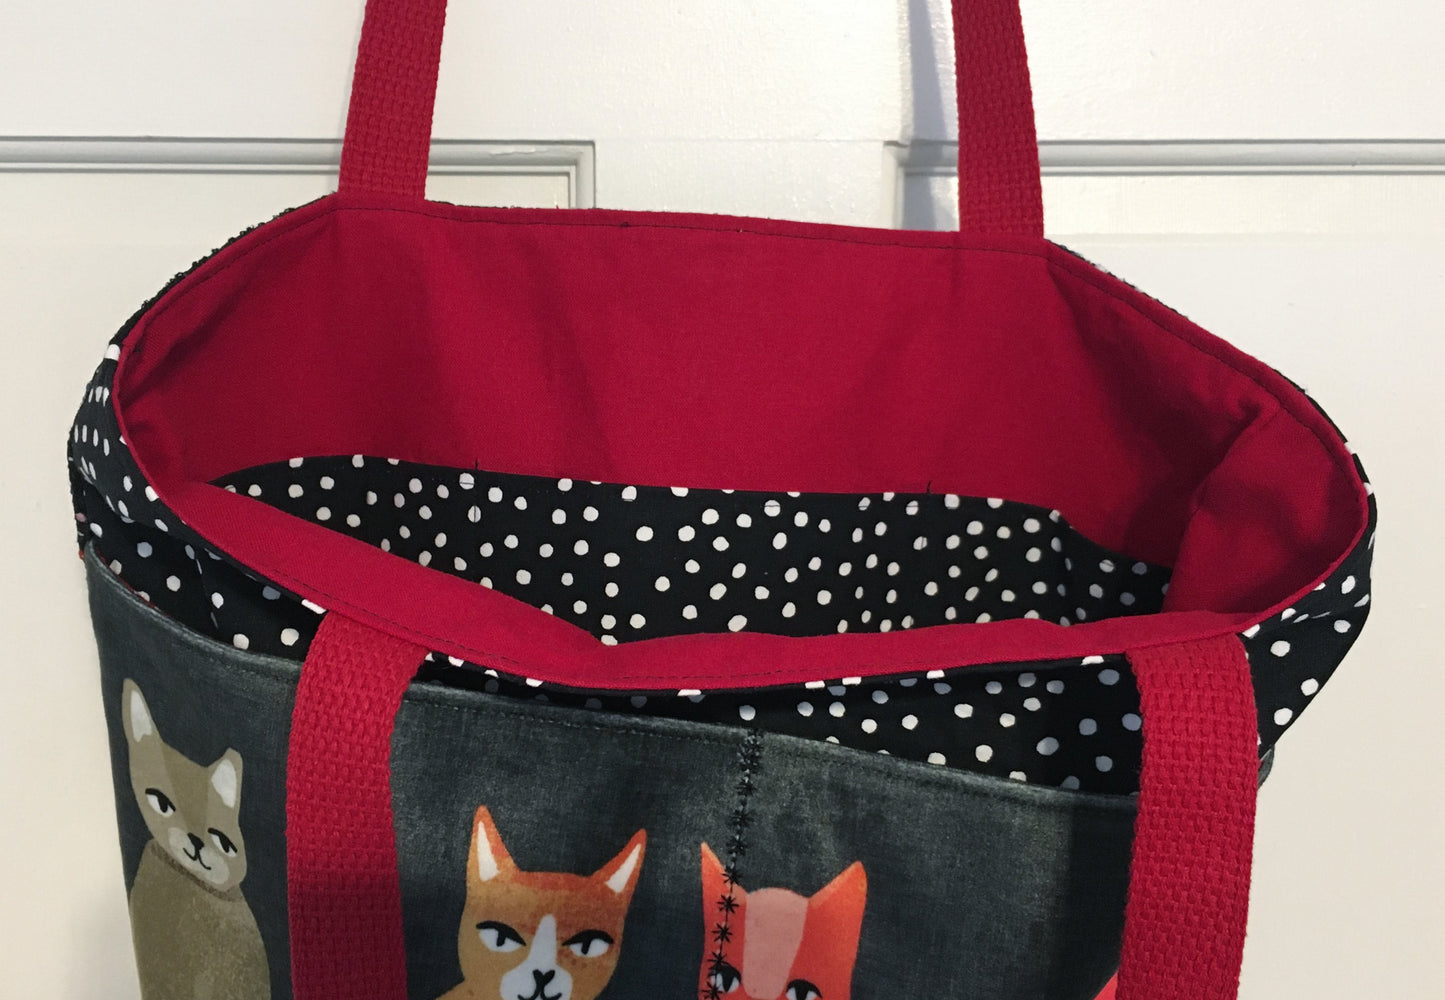 Velvet Kitties Epic Tote Bag